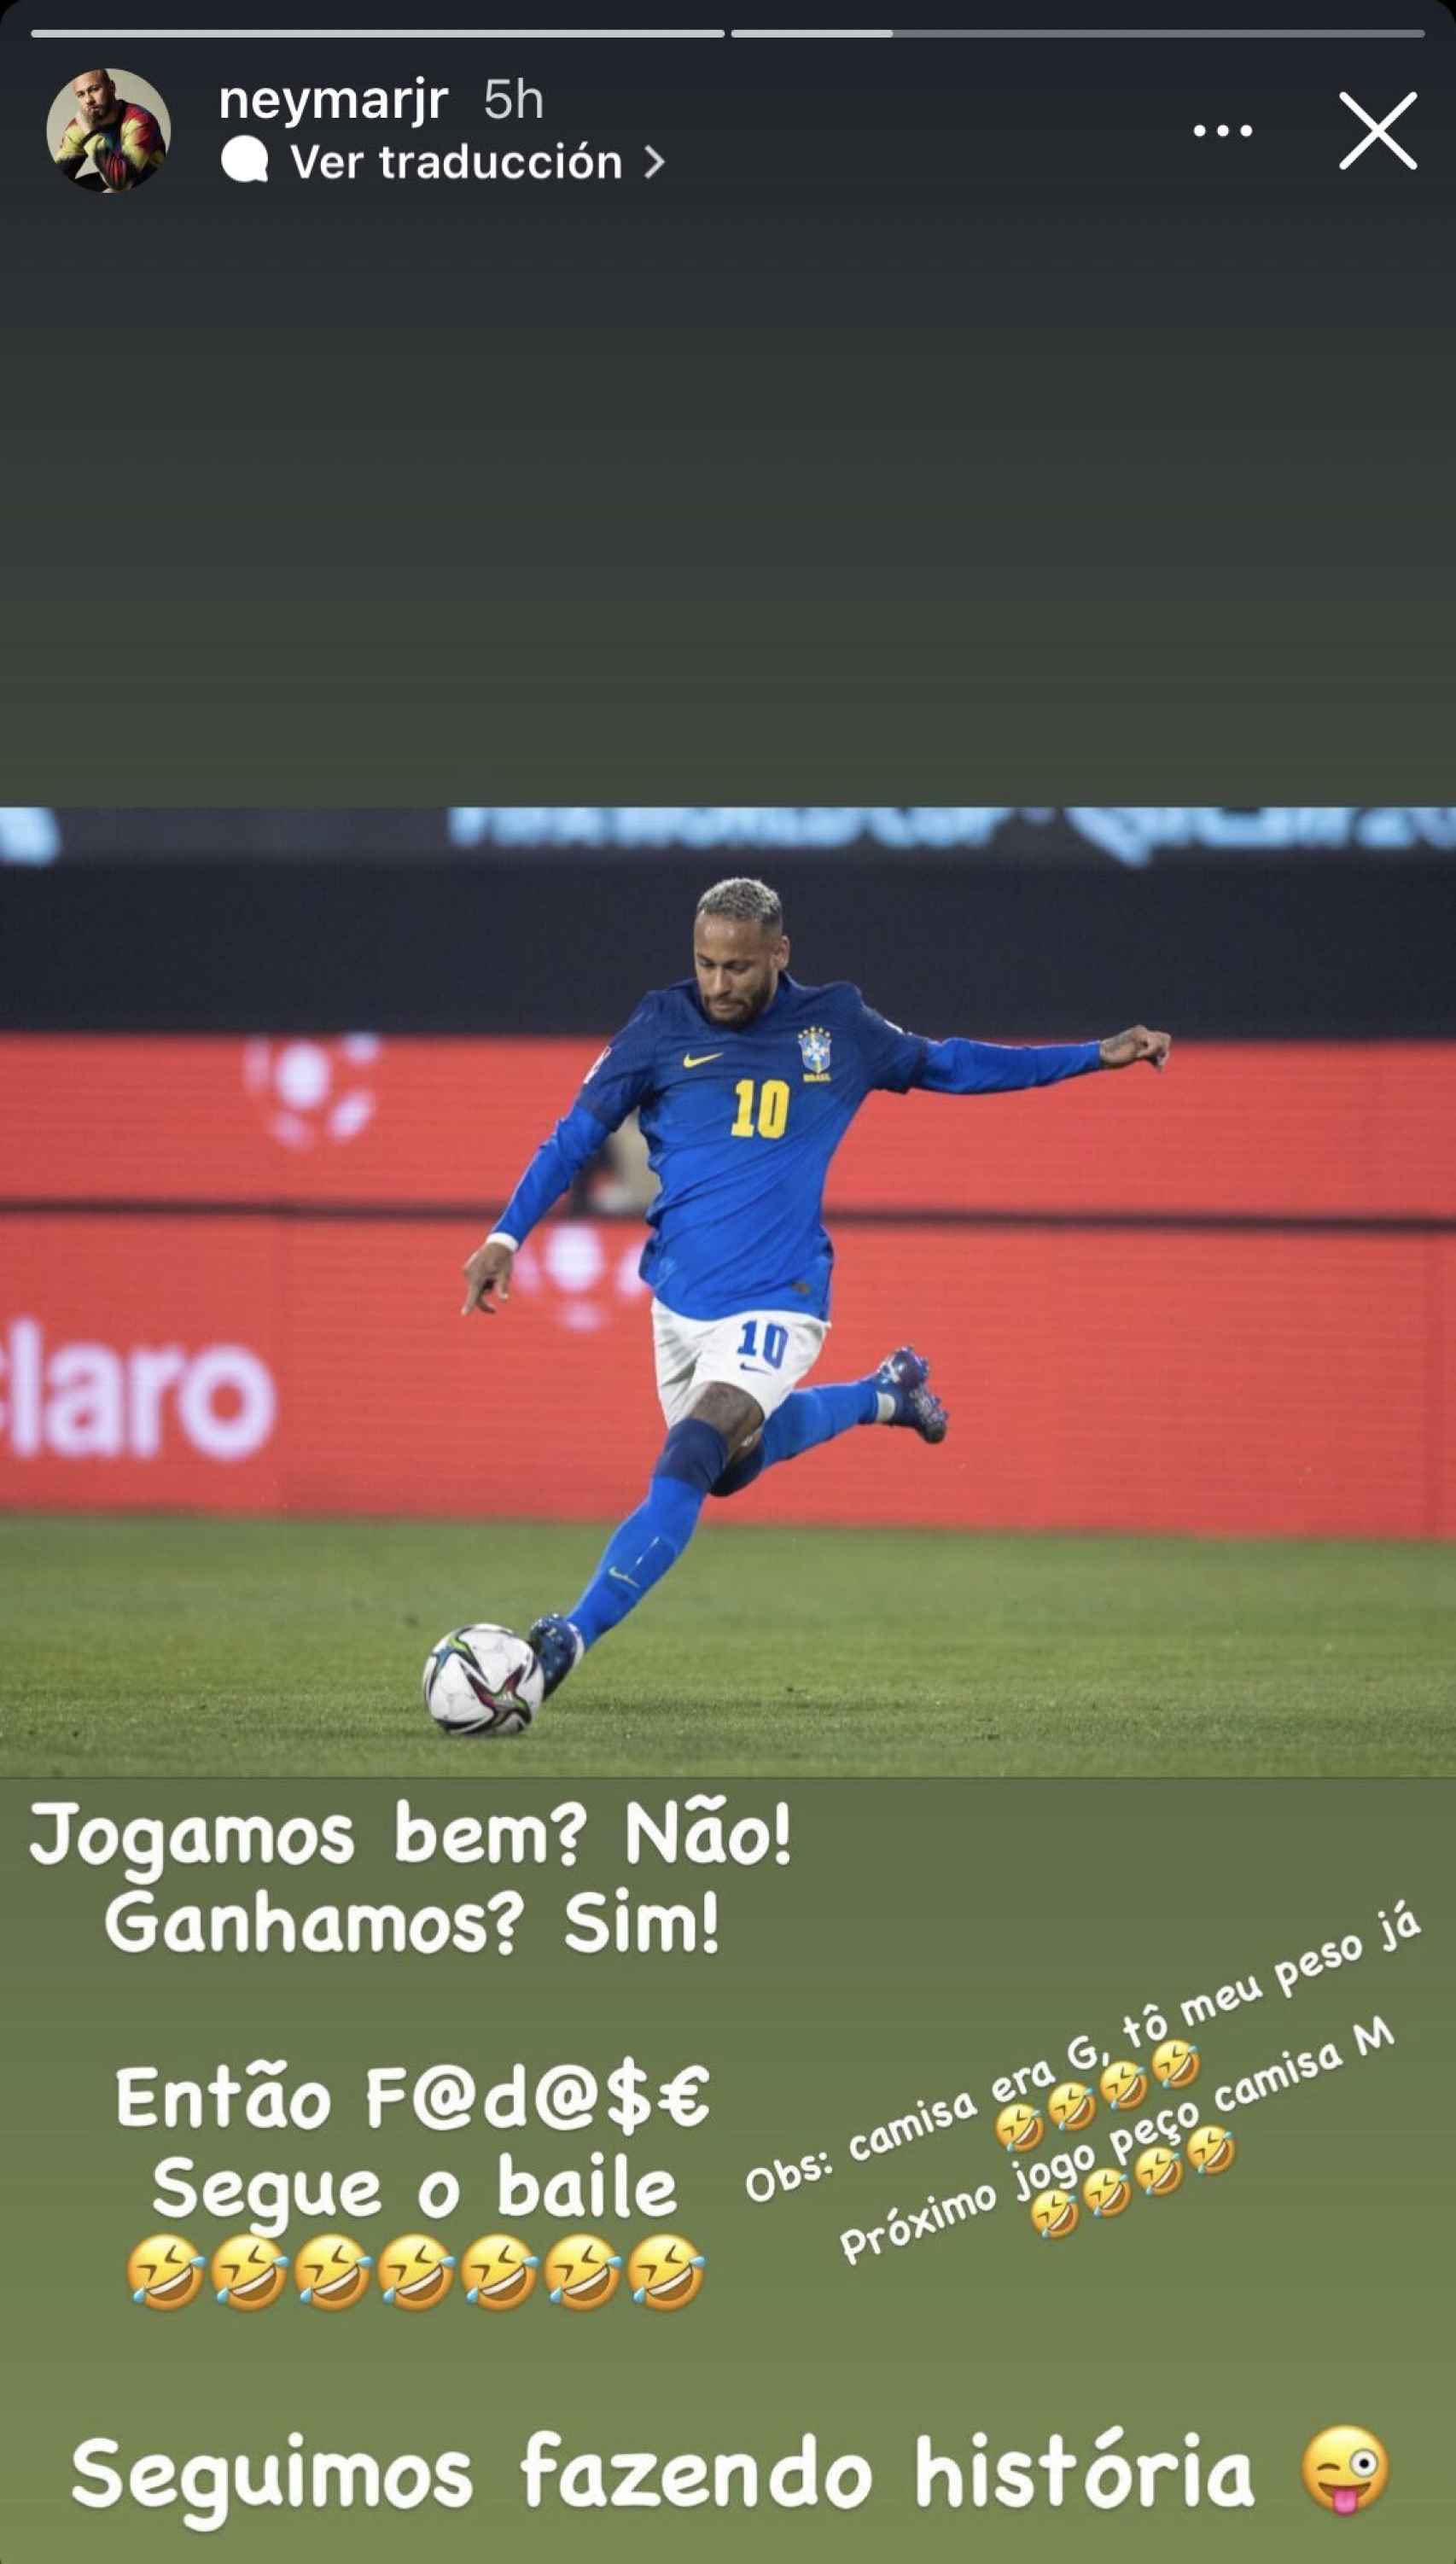 El mensaje de Neymar Jr en las redes sociales